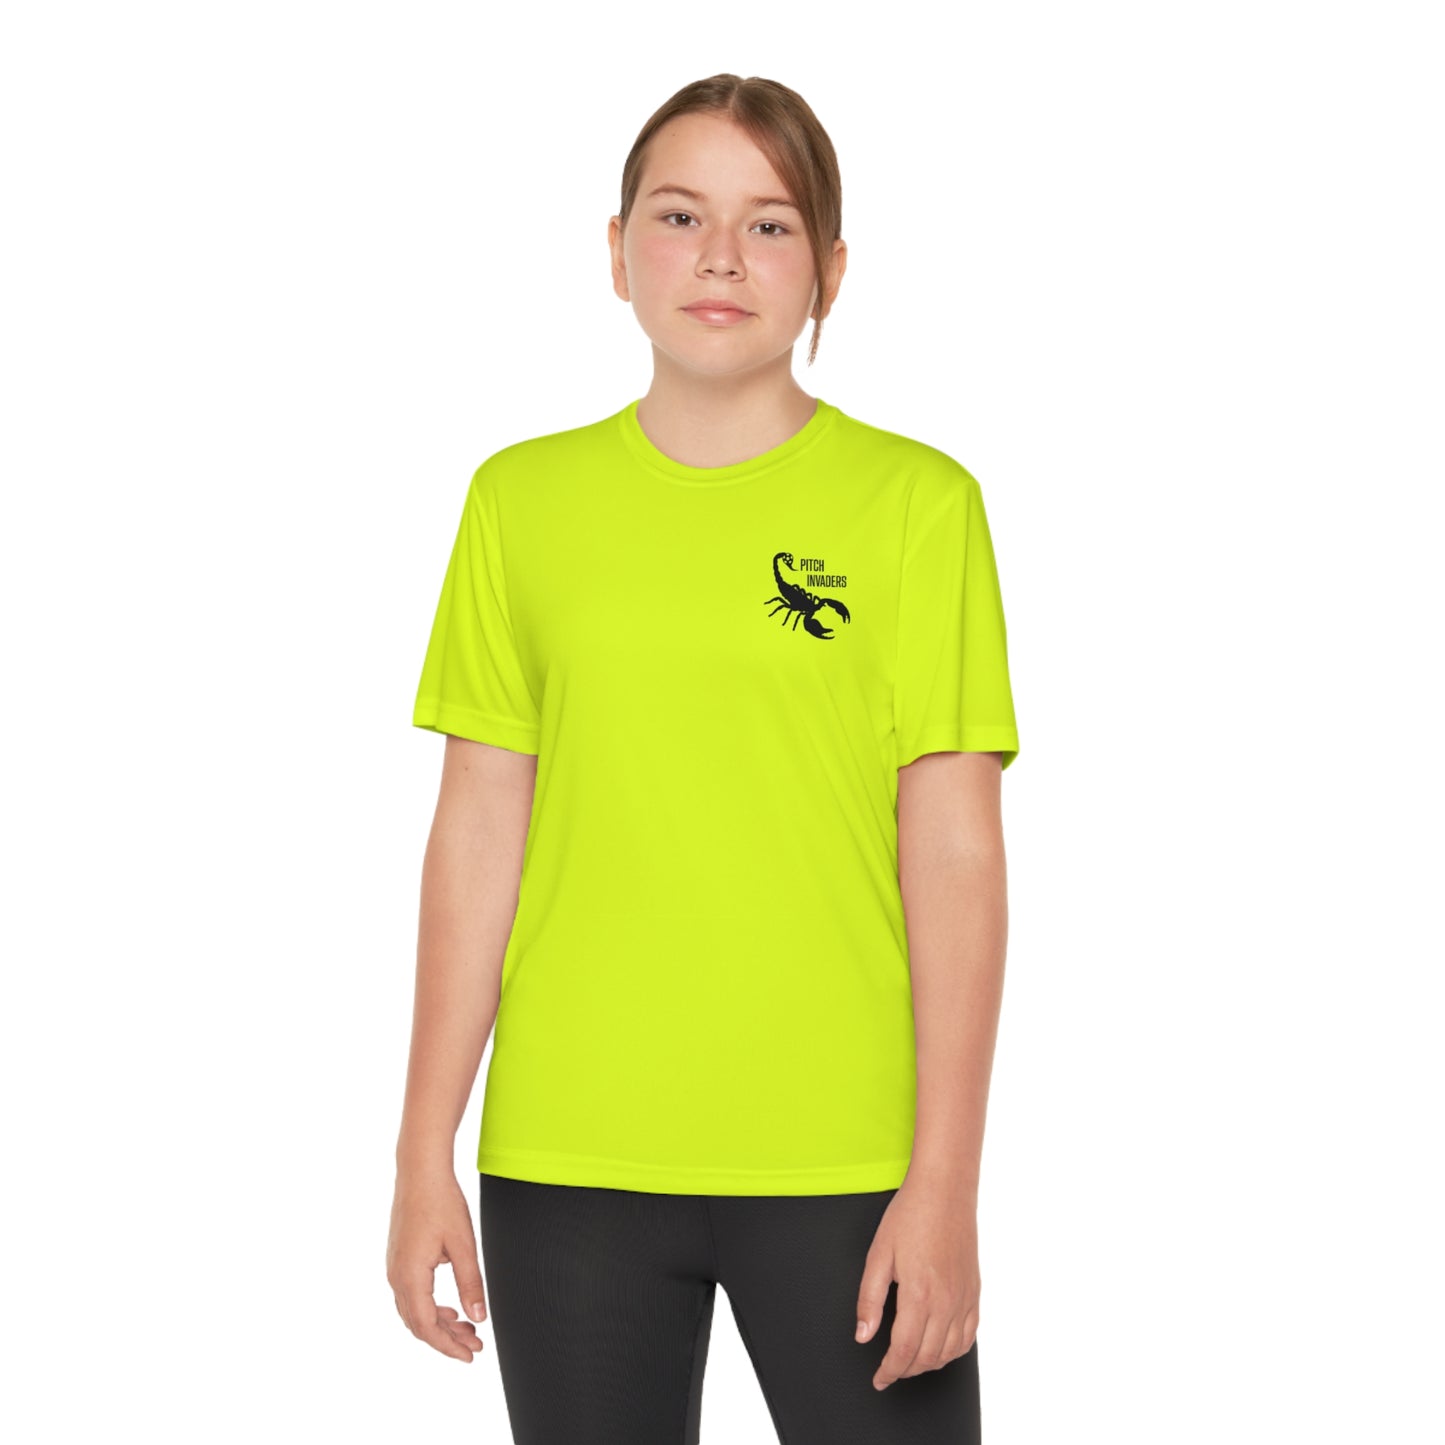 YOU GOT NUTMEGGED Youth Athletic T-Shirt (Unisex)